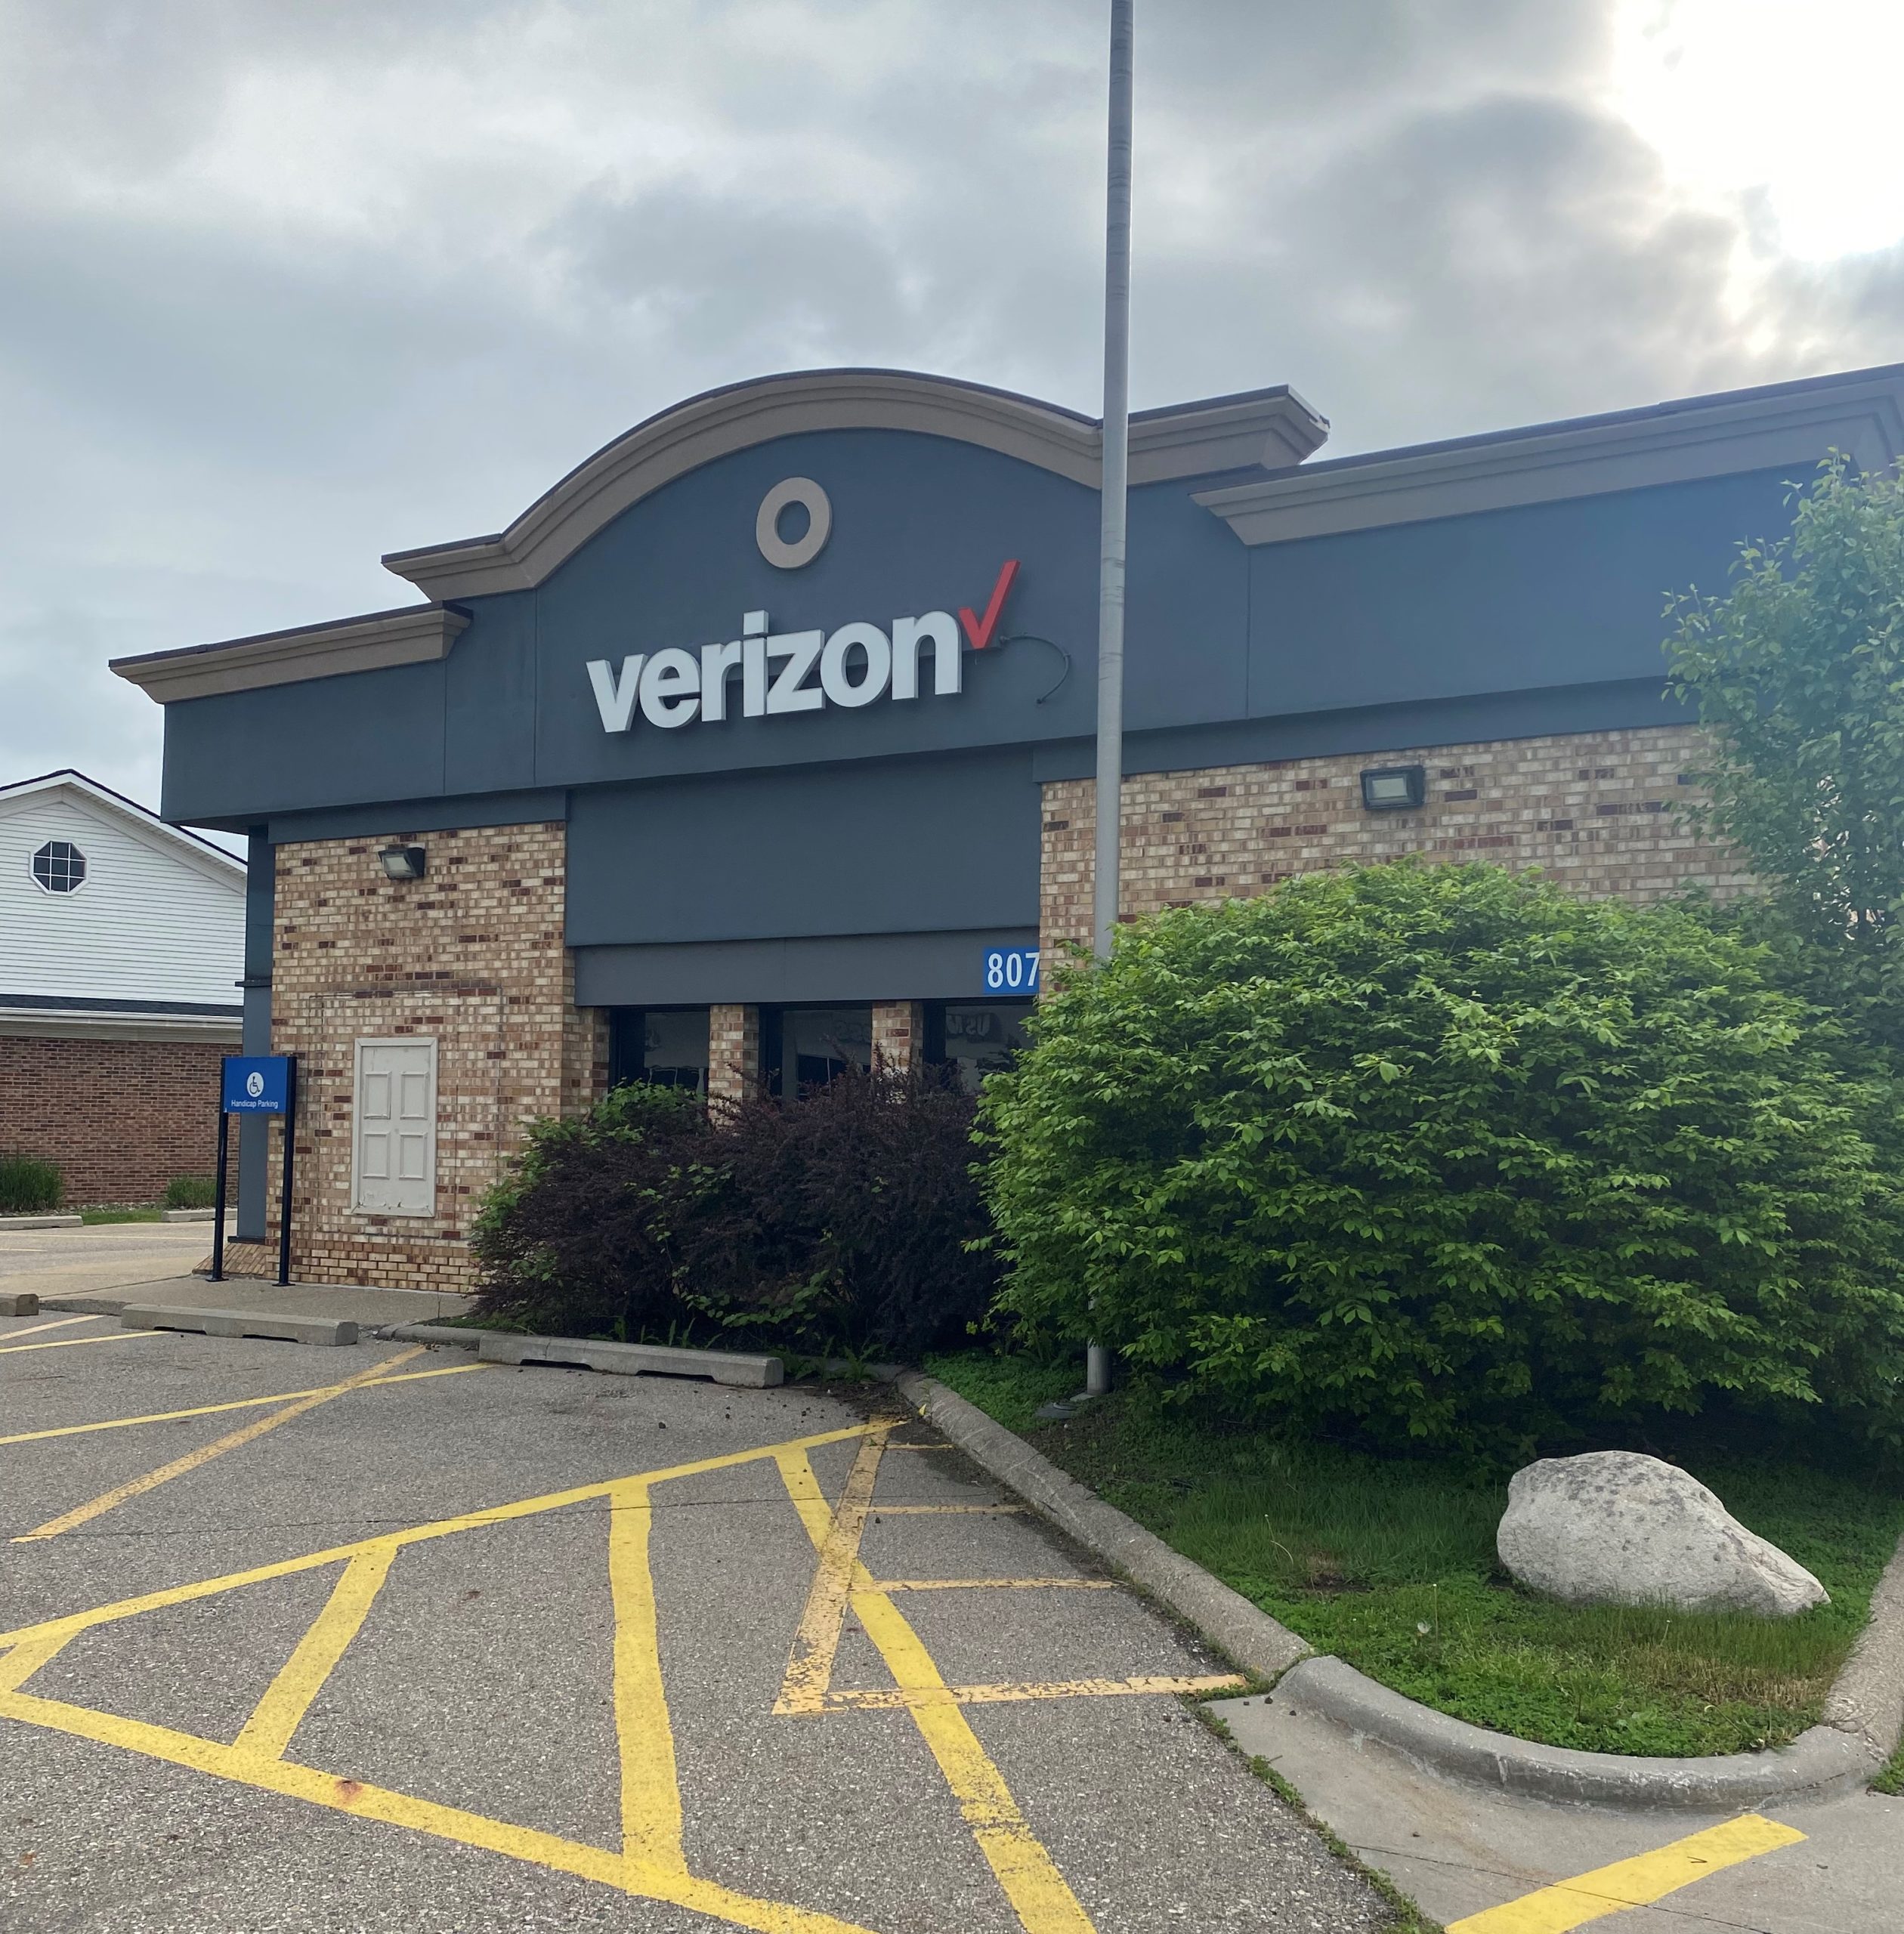 Verizon Stores Near Michigan - Location and address of Verizon corporate stores in Michigan